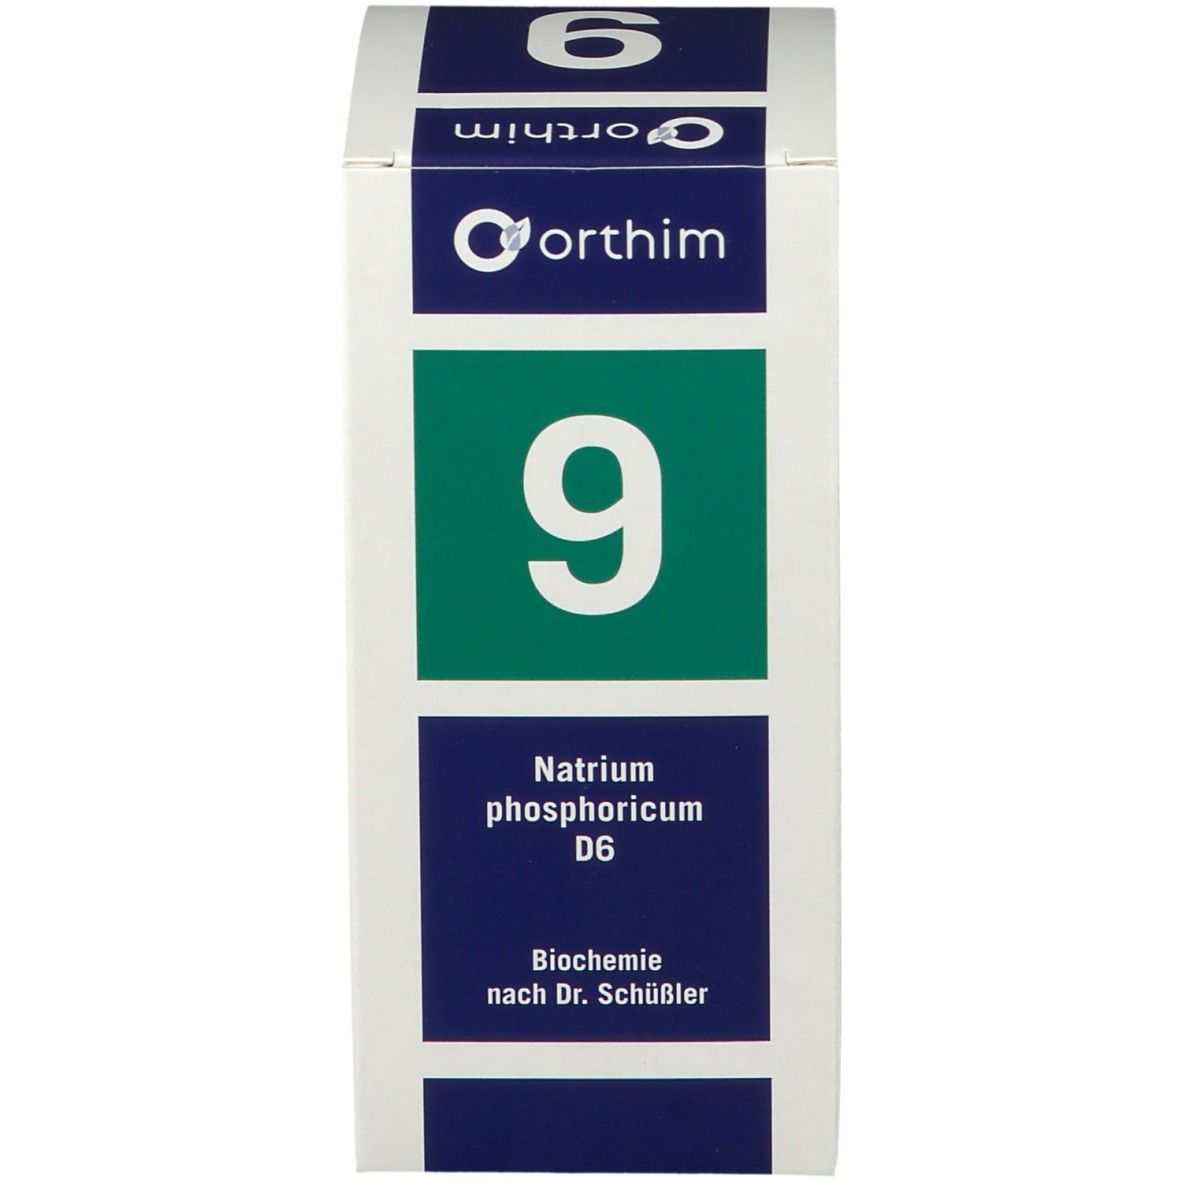 Biochemie orthim® Nr. 9 Natrium phosphoricum D6